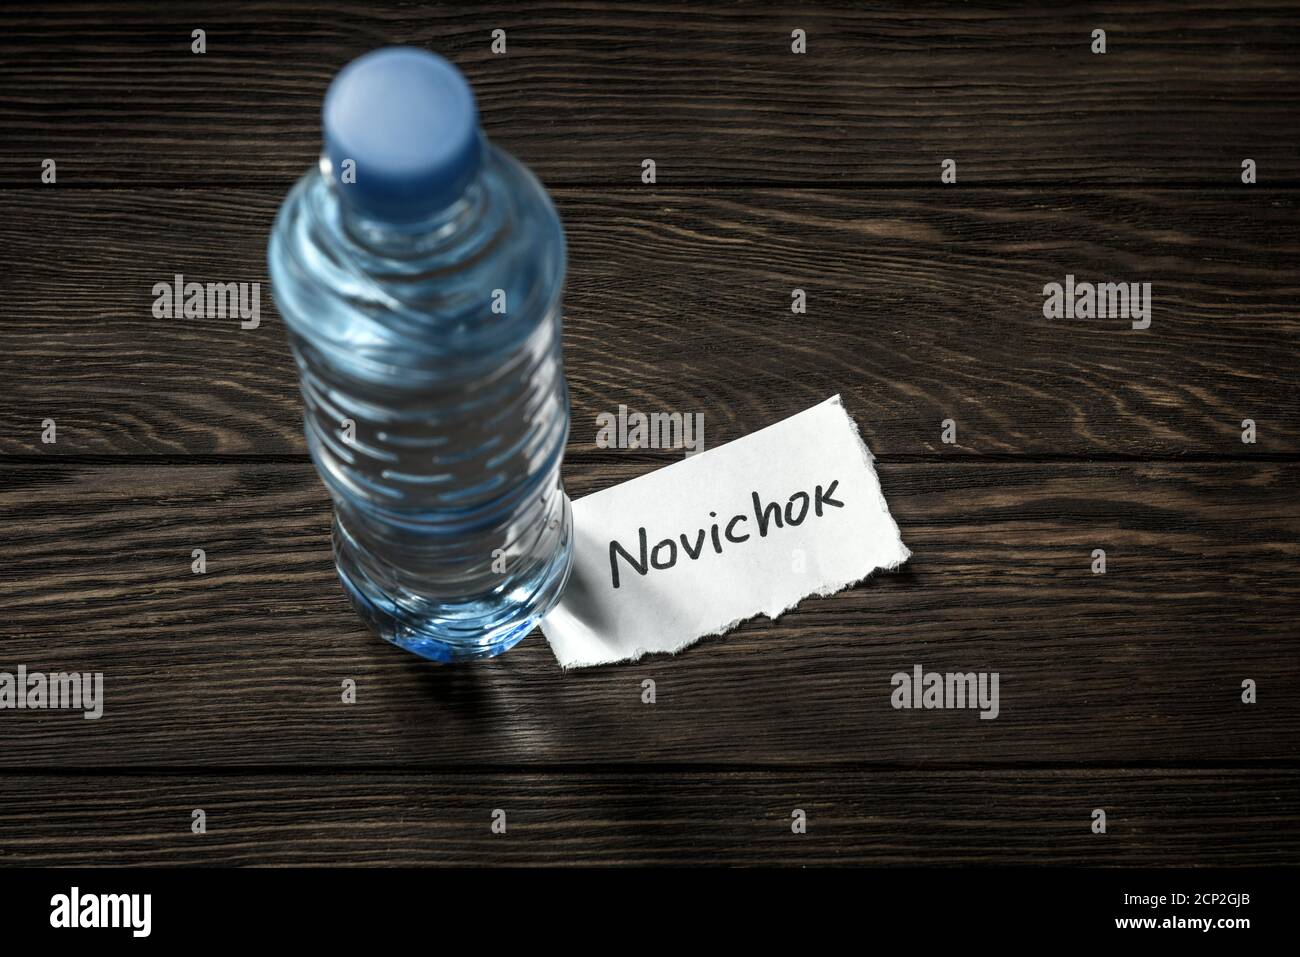 Bouteille d'eau et note Novichok sur table en bois. Novichok est un poison agent, venin nerveux mortel. Concept d'incident Navalny, service de renseignement, se Banque D'Images